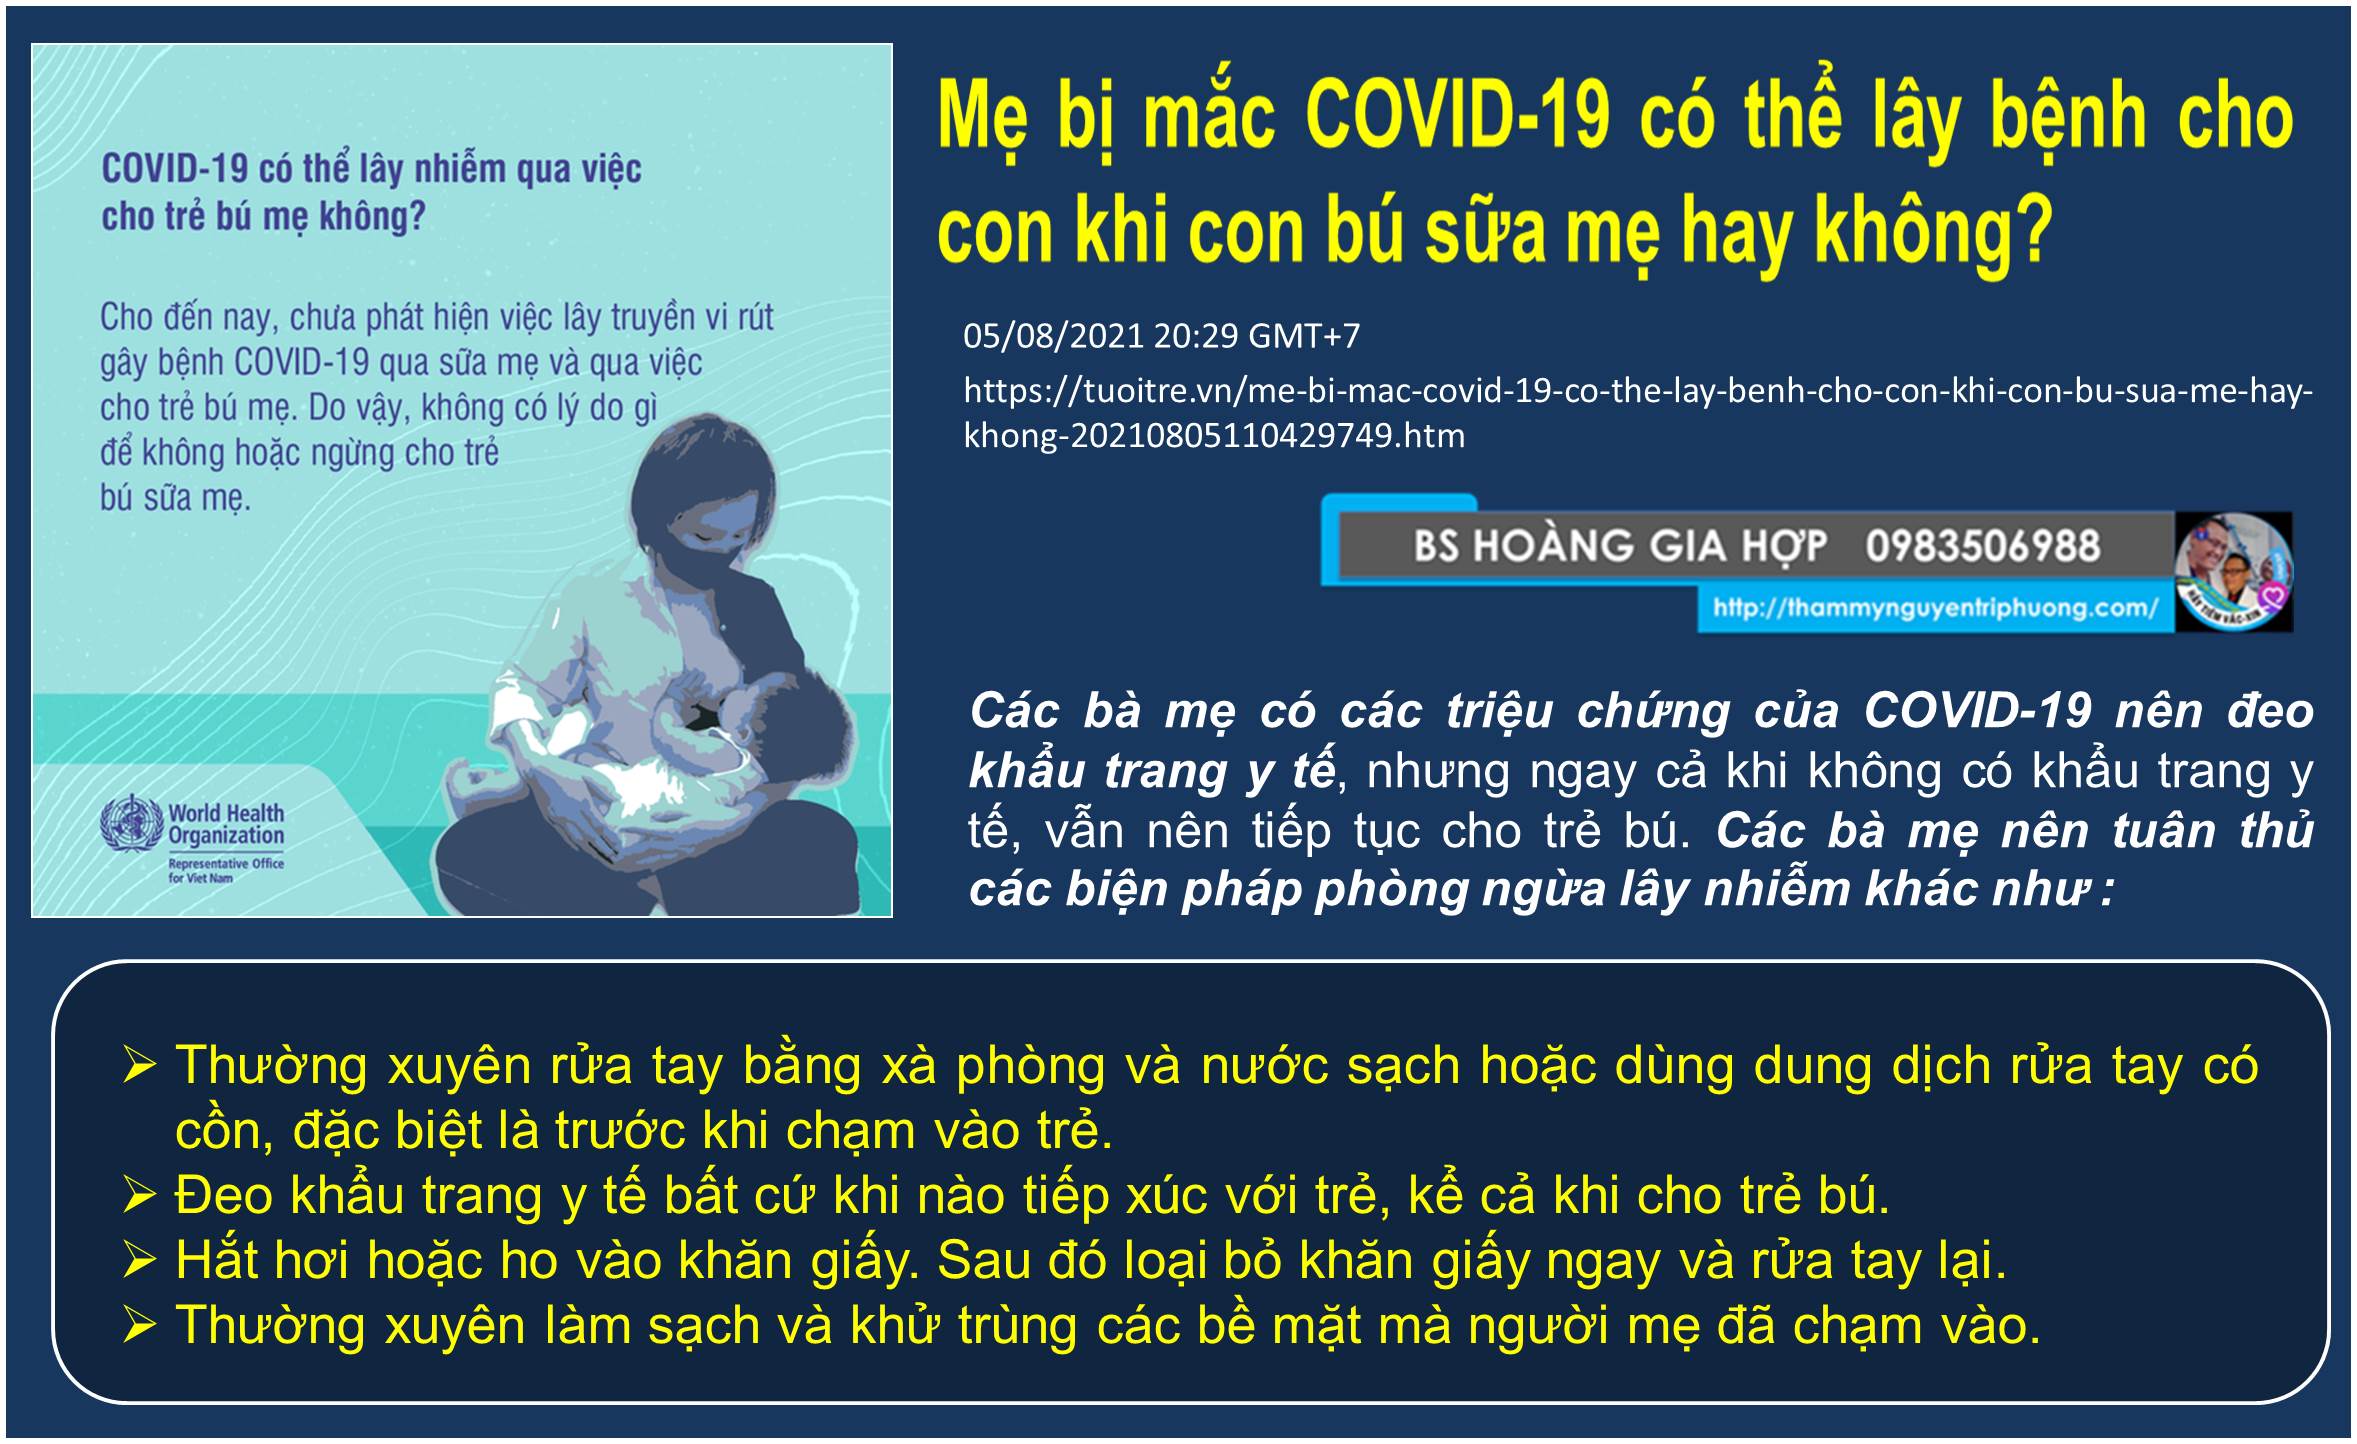 Mẹ bị mắc COVID-19 có thể lây bệnh cho con khi con bú sữa mẹ hay không?